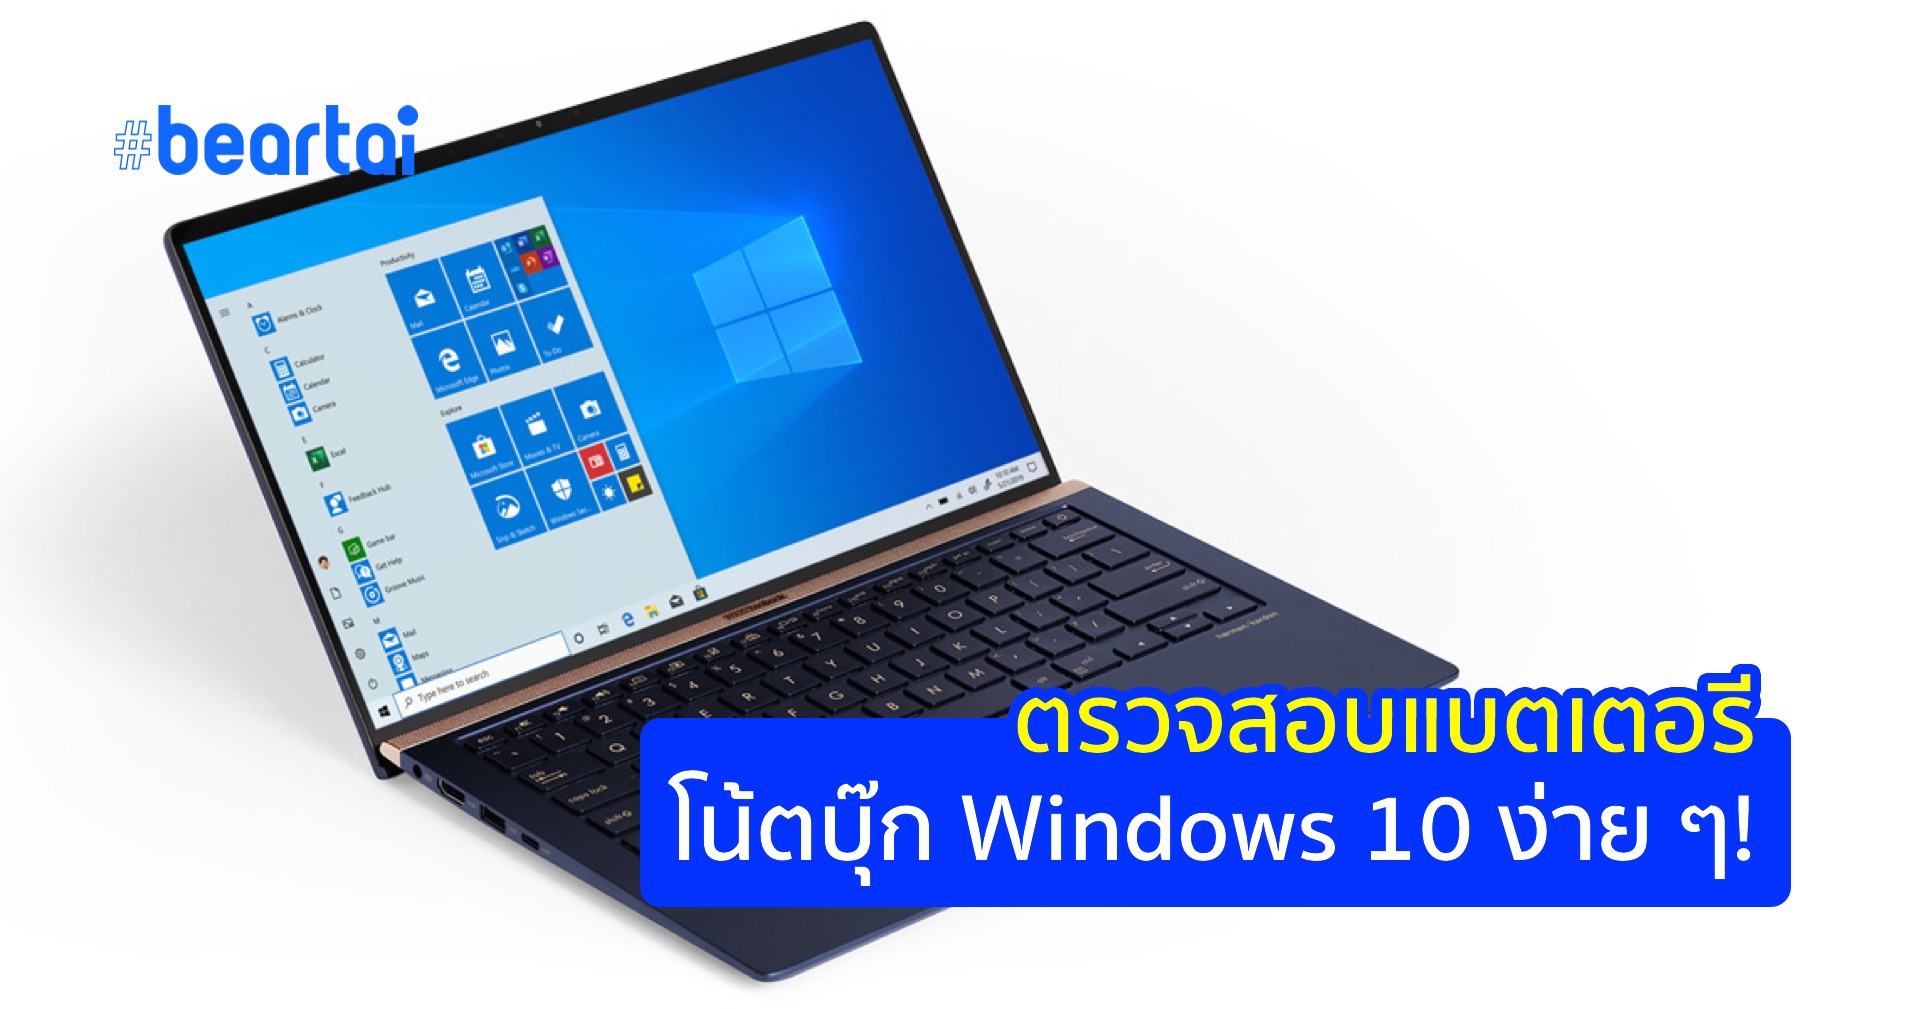 วิธีตรวจสอบประสิทธิภาพแบตเตอรีในโน้ตบุ๊ก Windows 10 ใช้ได้ทุกรุ่นทุกแบรนด์